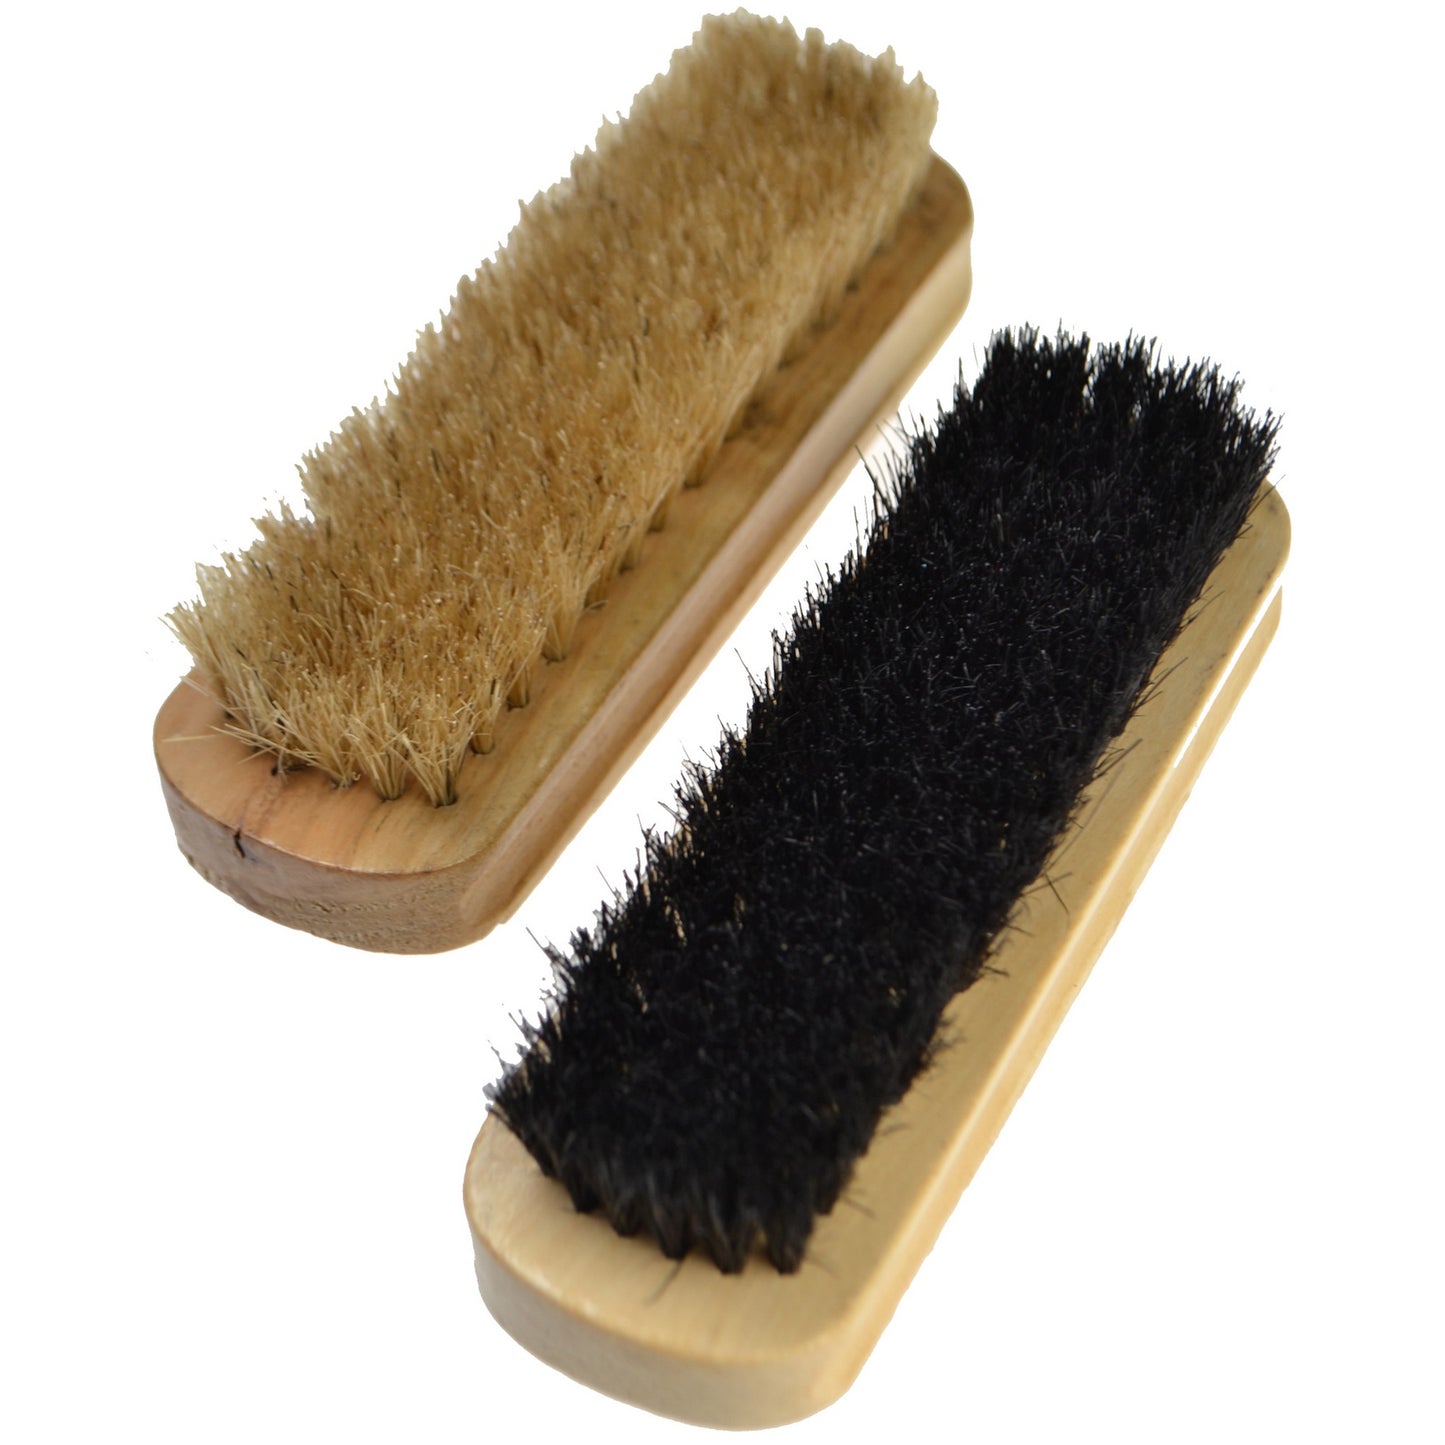 Dasco - Pair of Compact Bristle Brushes